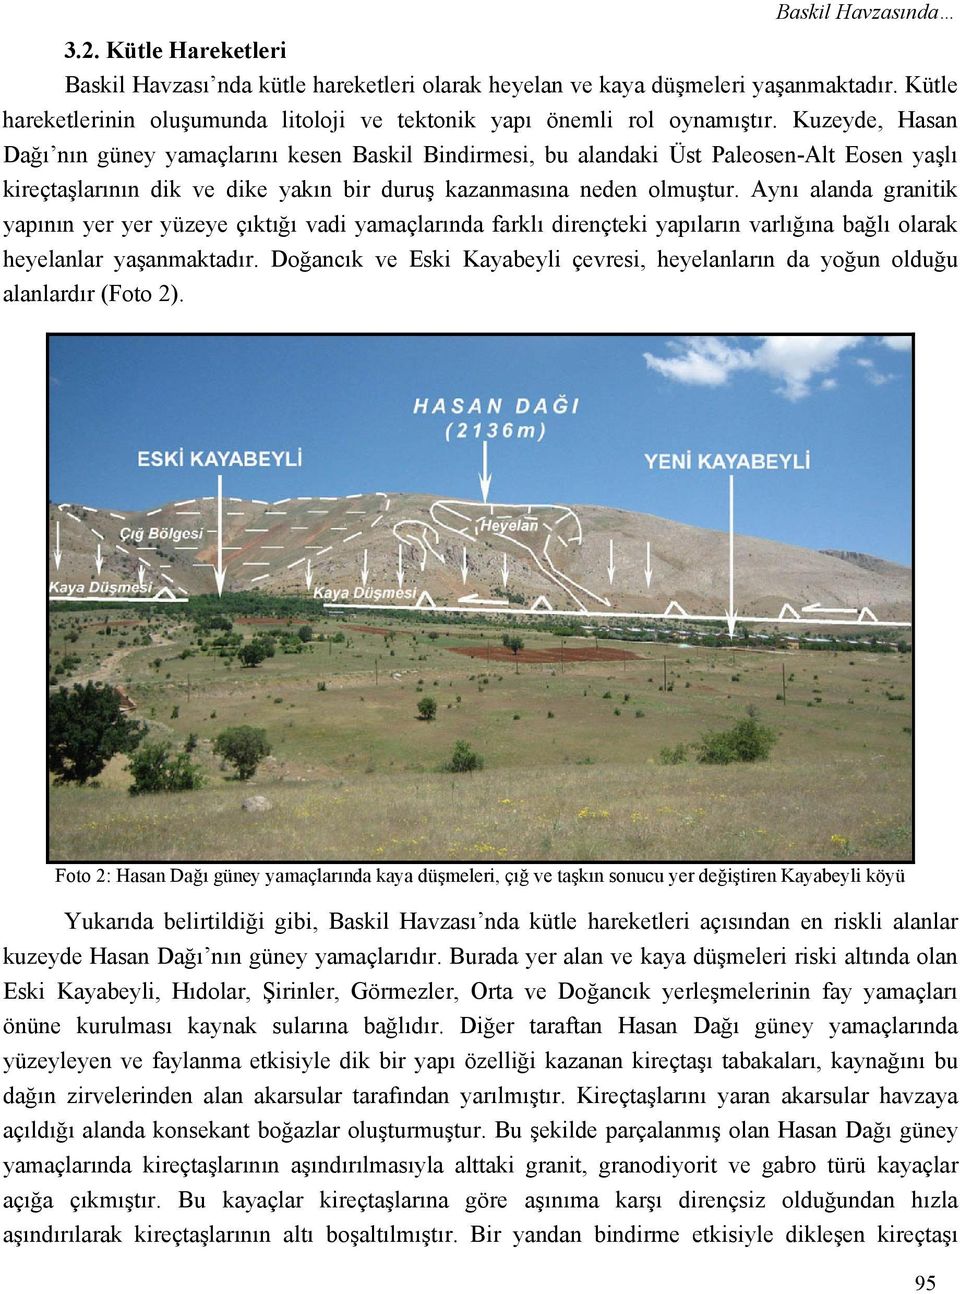 Kuzeyde, Hasan Dağı nın güney yamaçlarını kesen Baskil Bindirmesi, bu alandaki Üst Paleosen-Alt Eosen yaşlı kireçtaşlarının dik ve dike yakın bir duruş kazanmasına neden olmuştur.